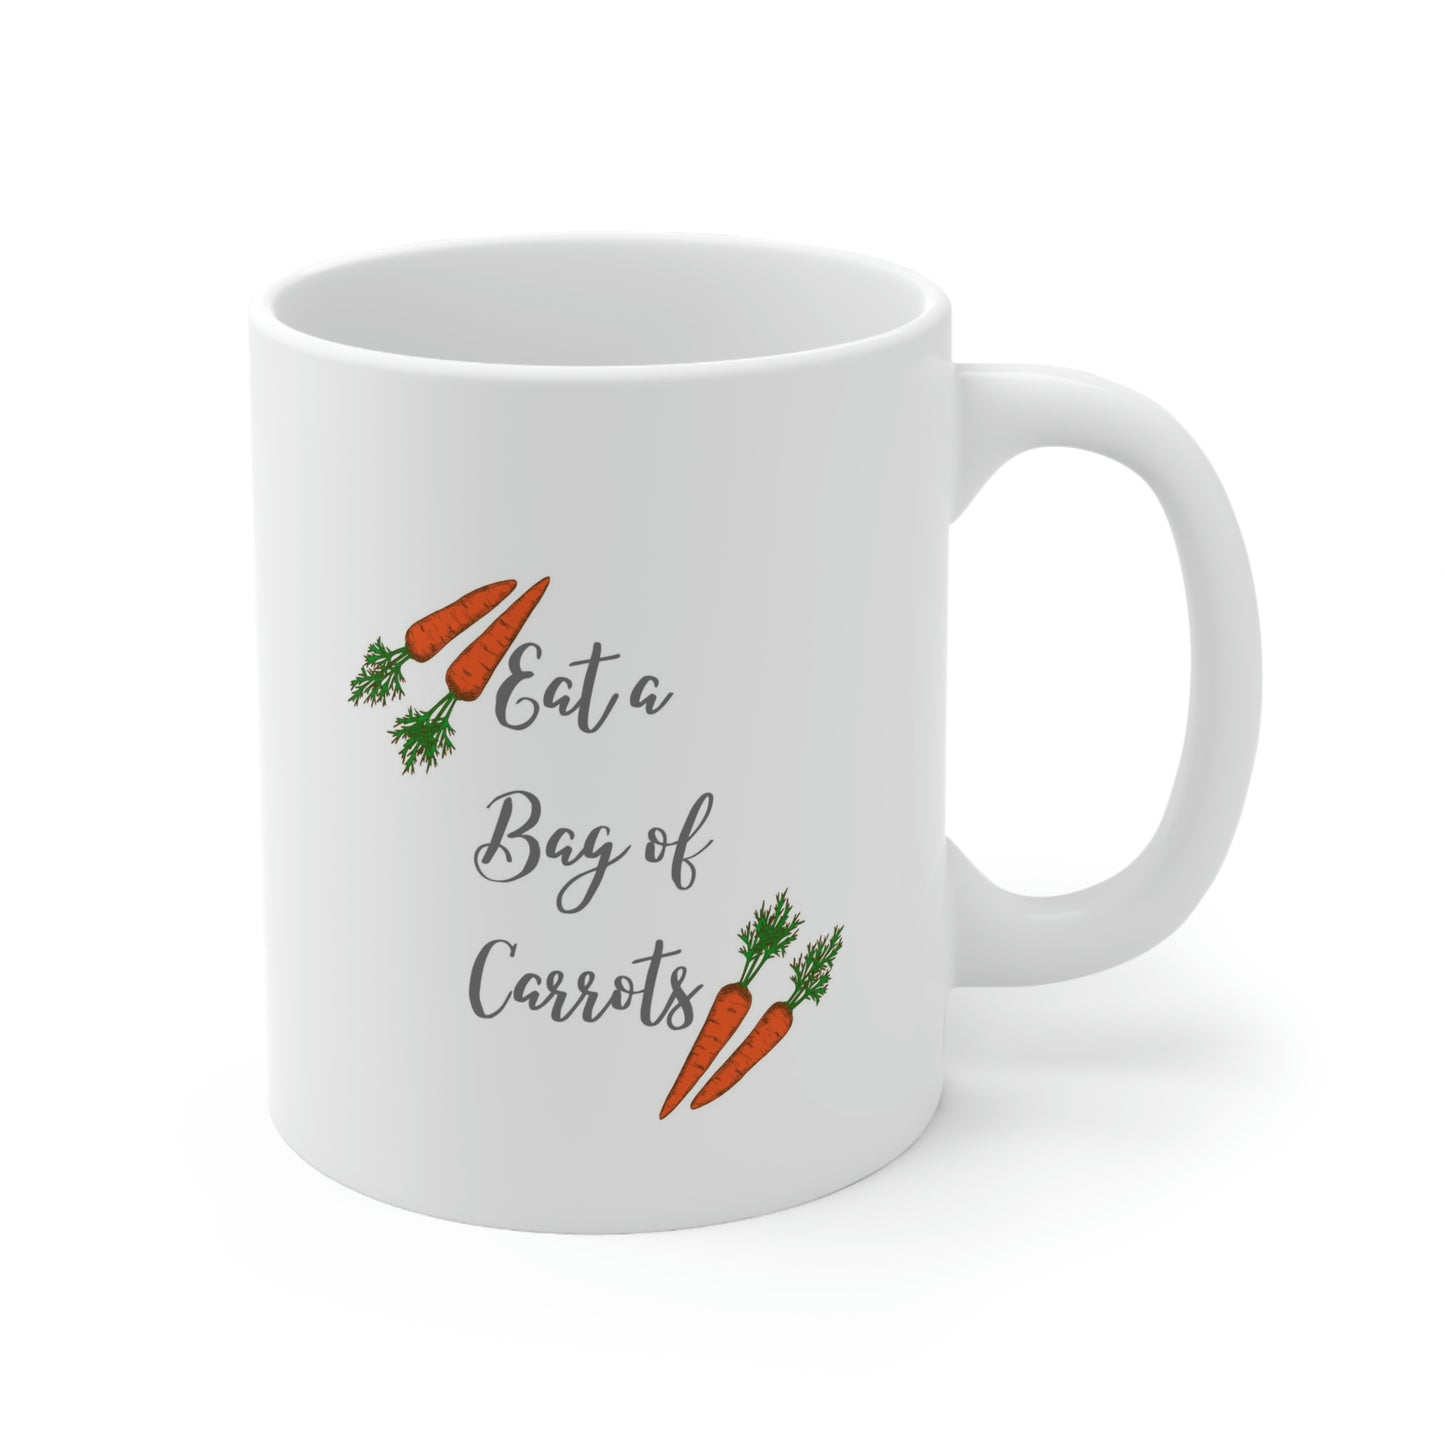 Eat a bag of Carrots Ceramic Mug 11oz